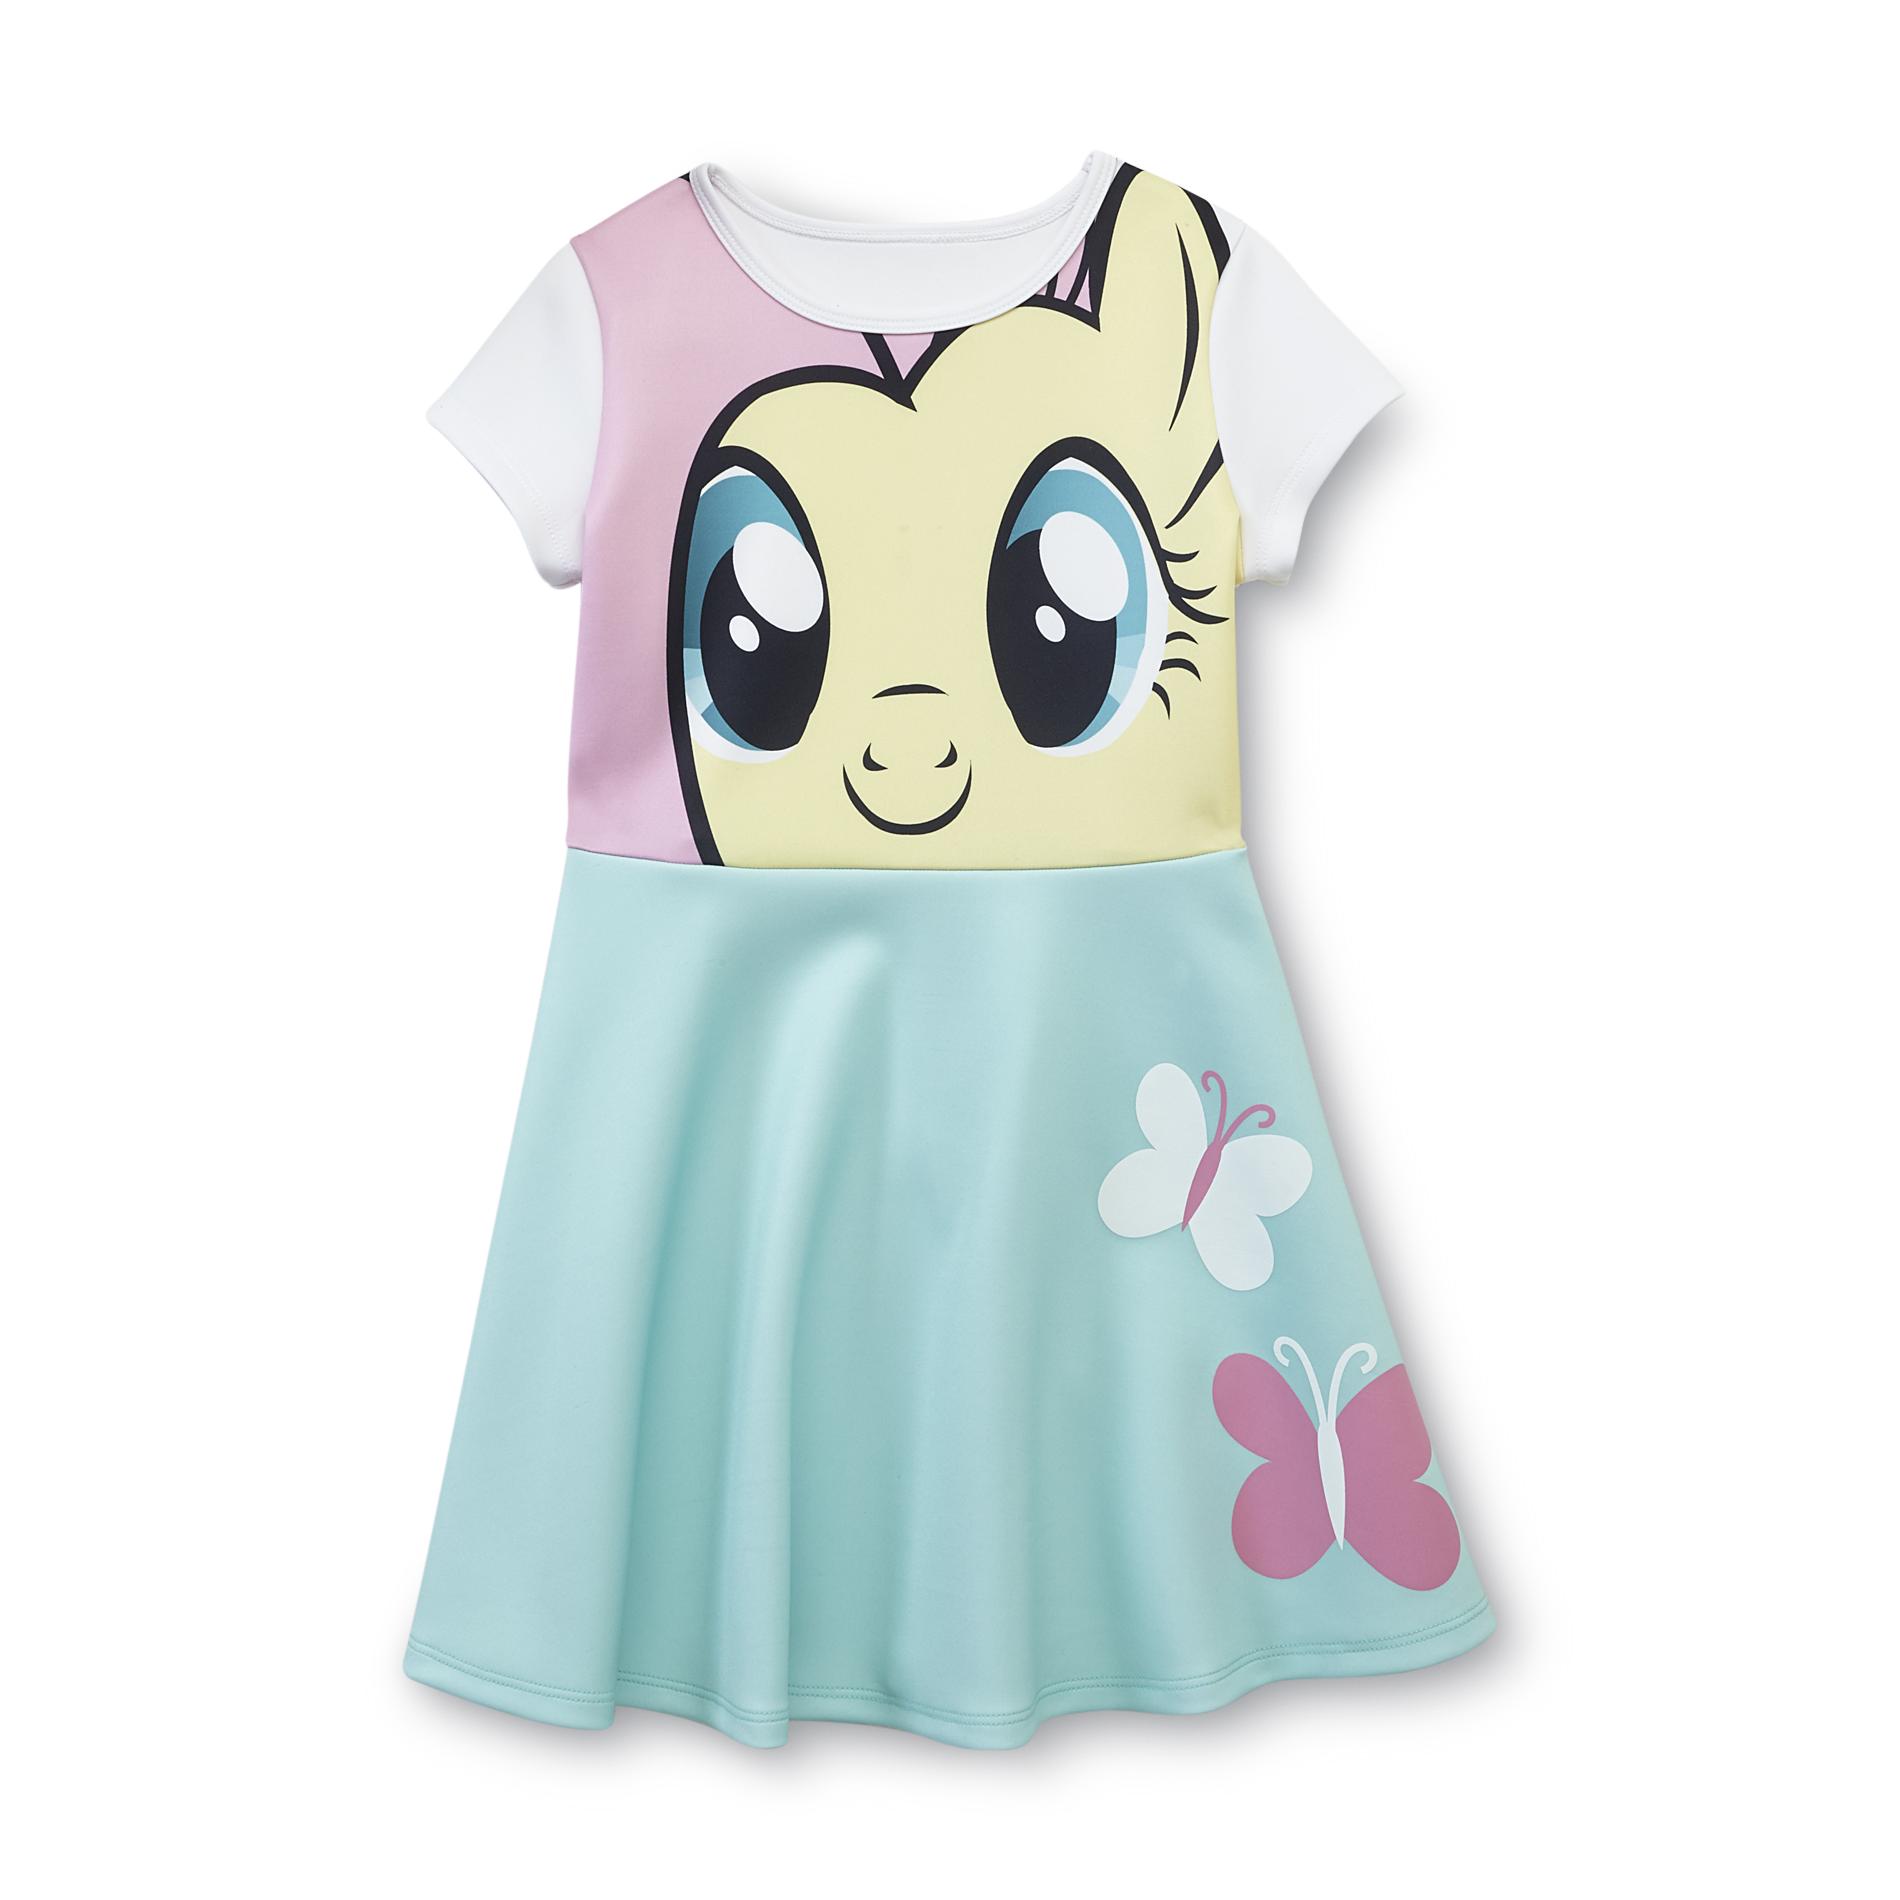 My Little Pony Girl's Dress - Fluttershy